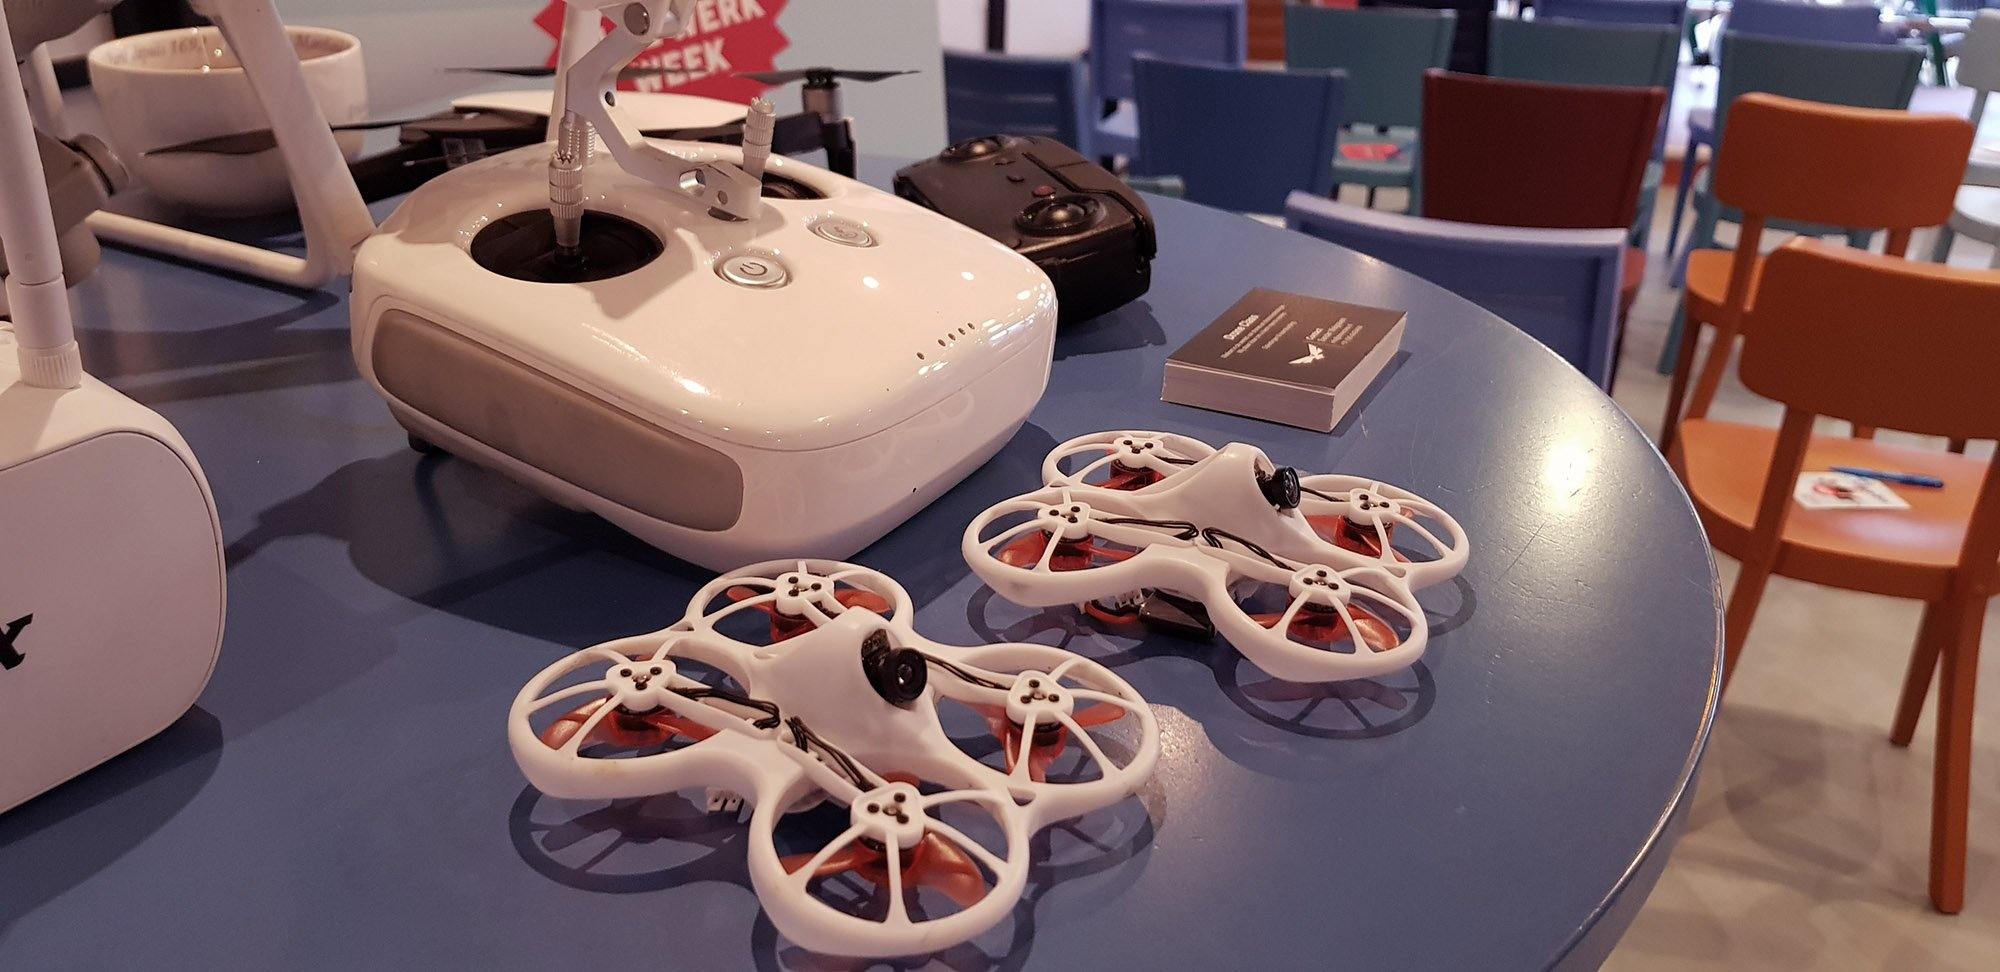 Doorlopende leerlijn drones vmbo - EU Dronebewijs